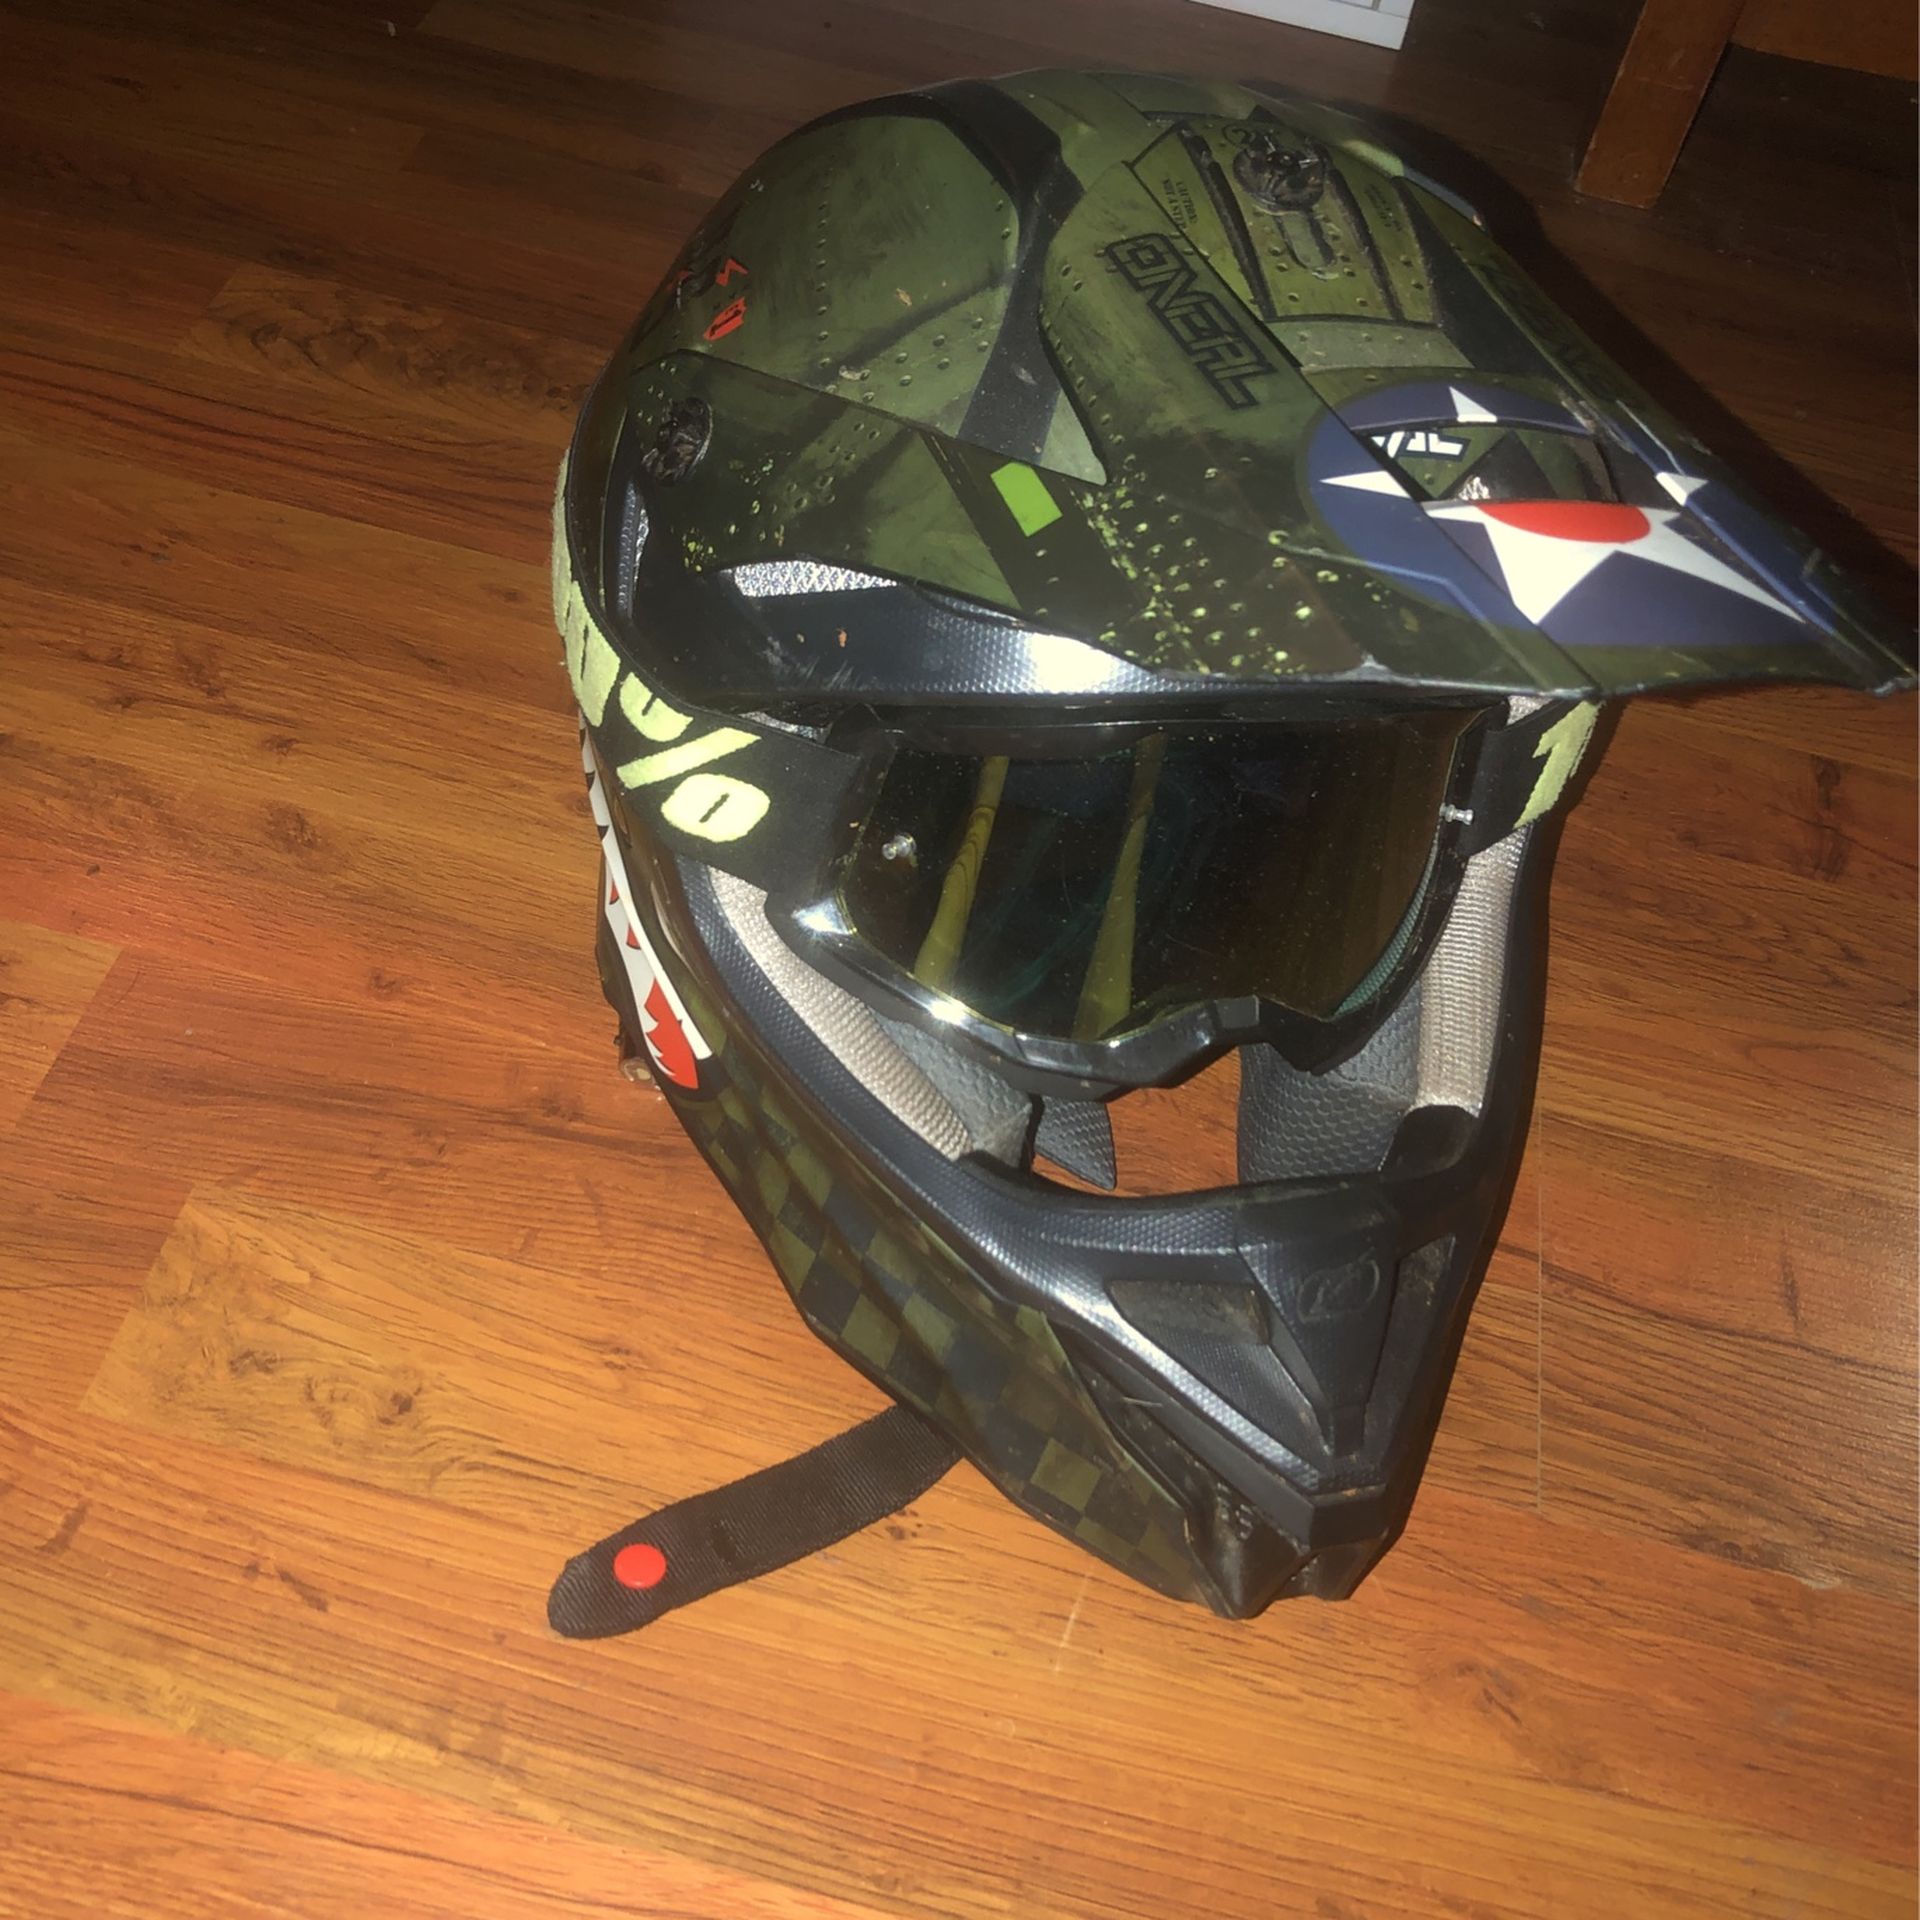 Atv/dirt bike Helmet 